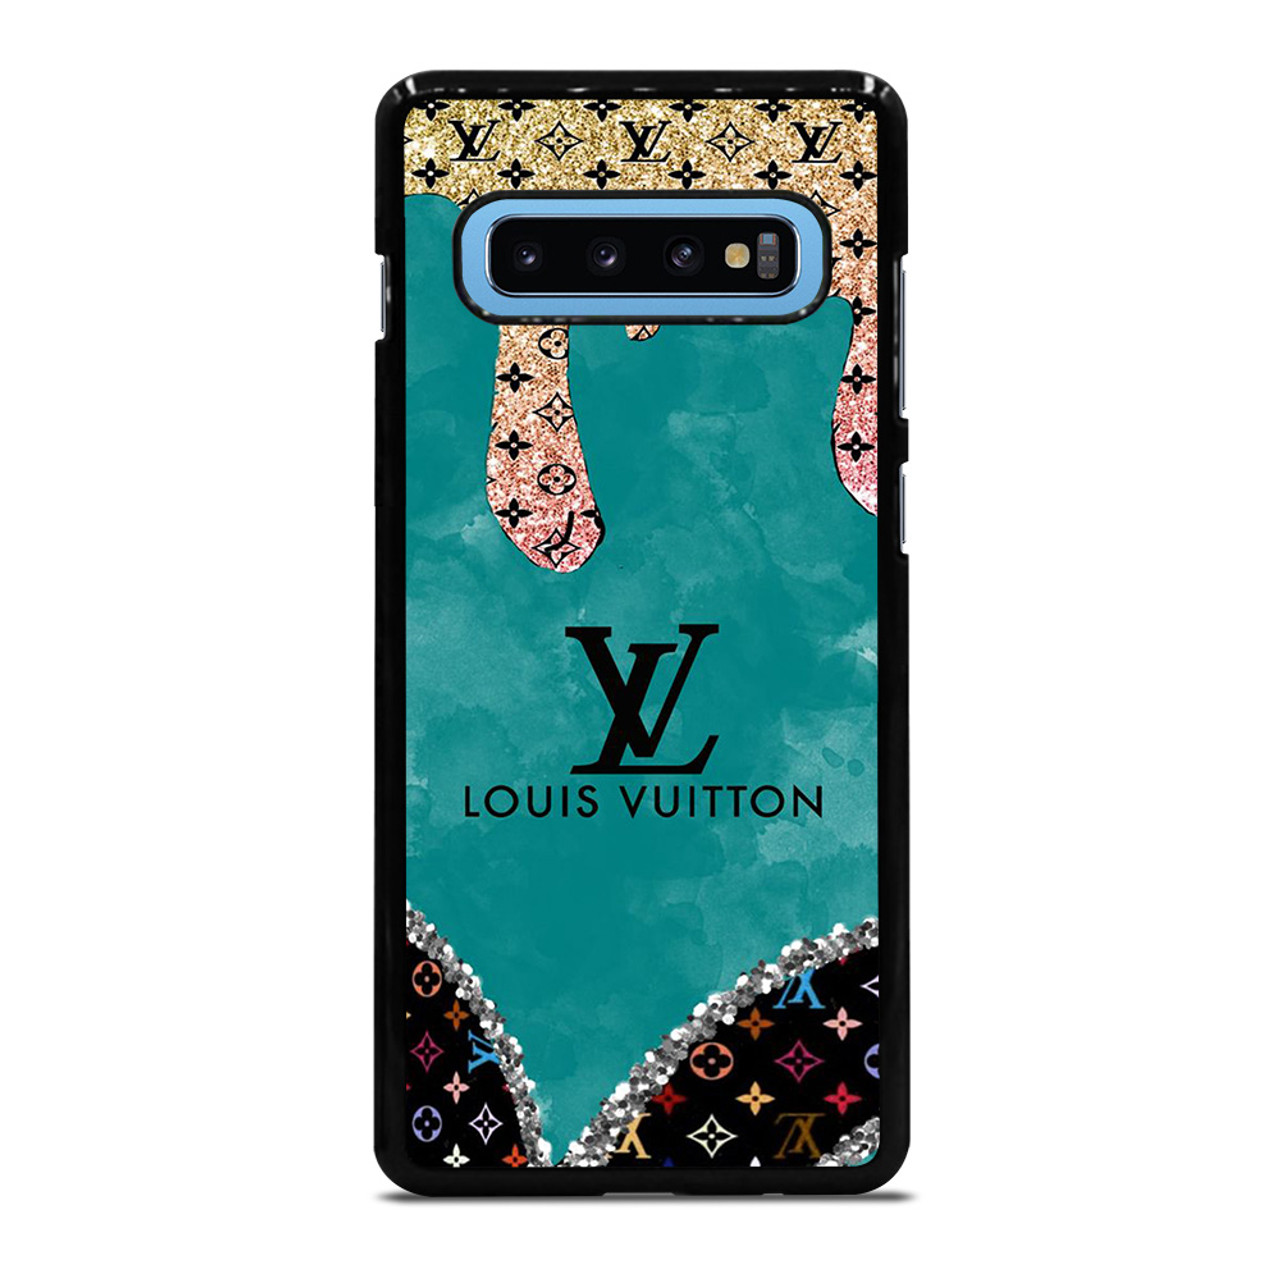 LOUIS VUITTON LV LOGO BLACK GOLD Samsung Galaxy S20 Case Cover